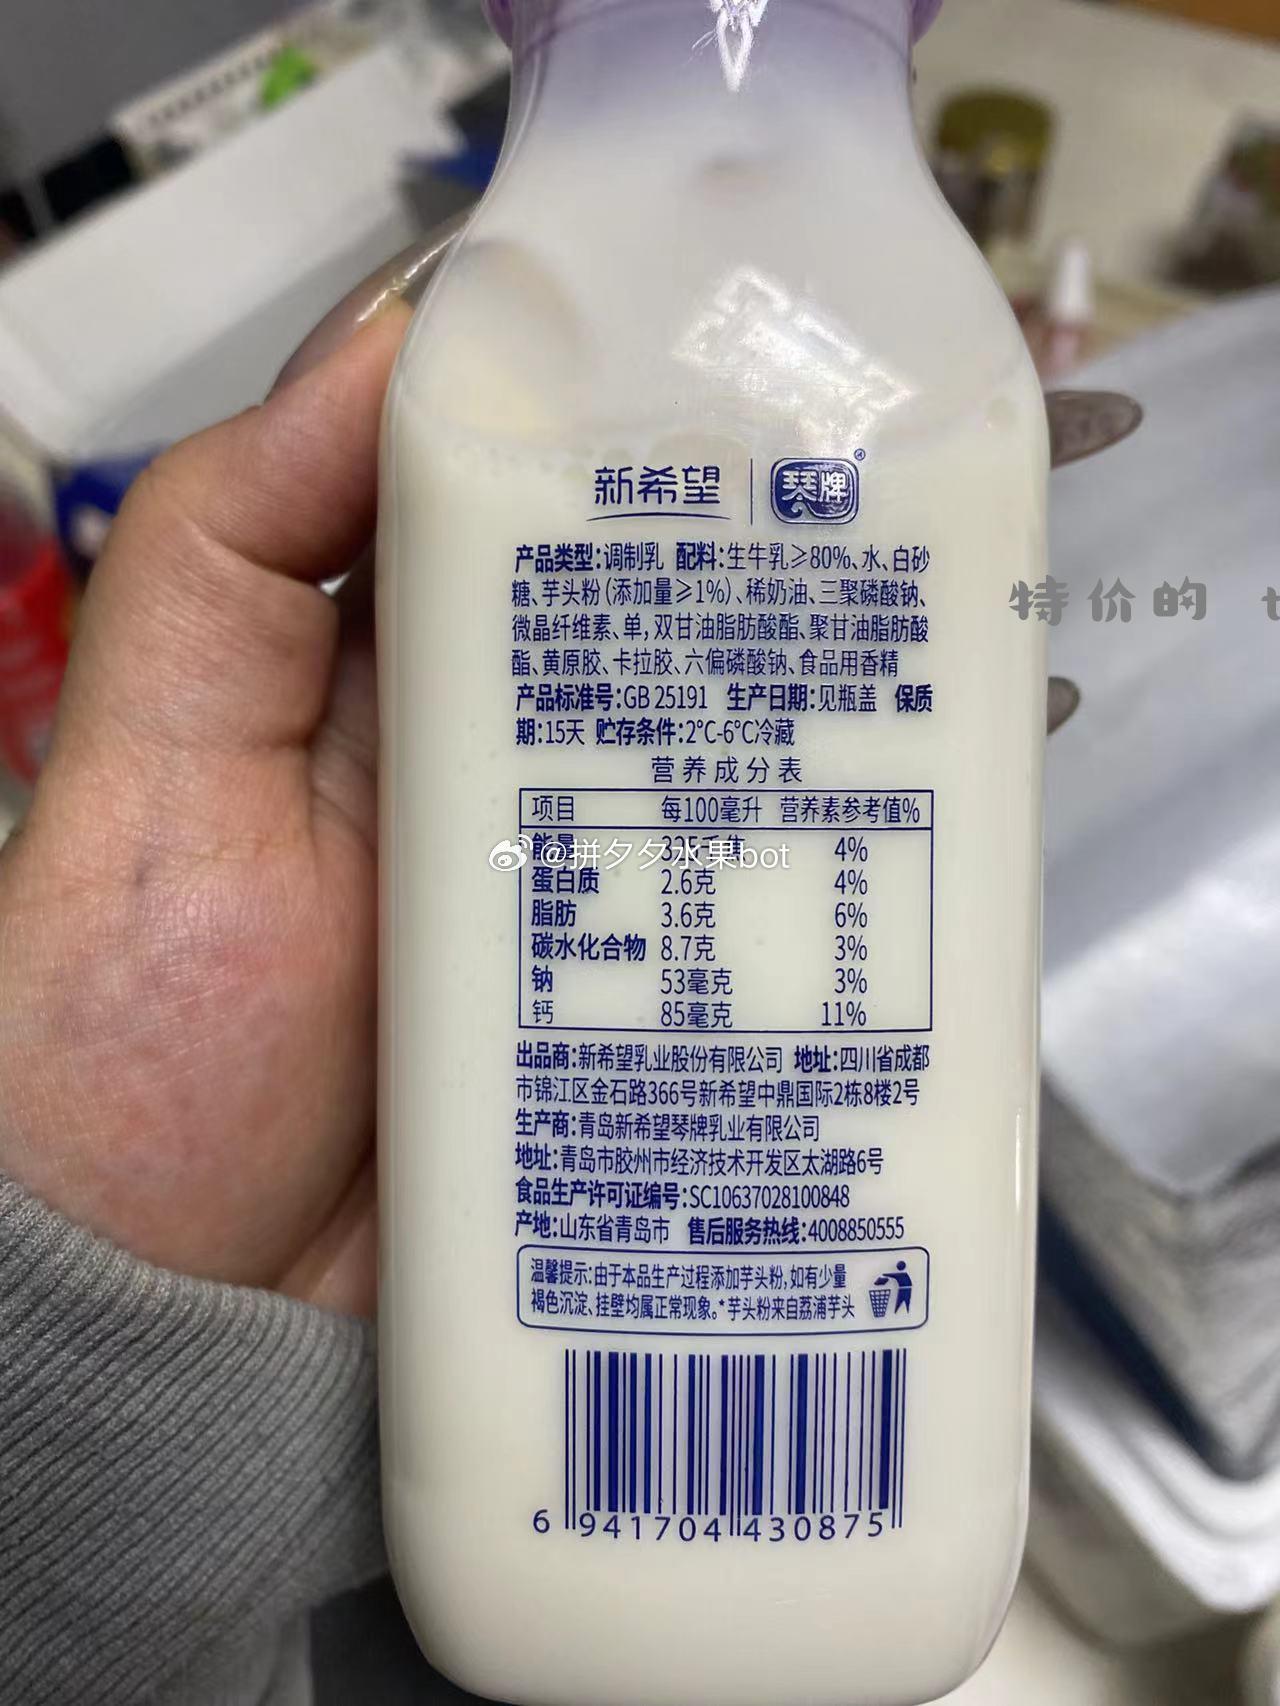 夕夕实测 买了一箱新希望的芋泥厚乳牛奶 看了配料表是调制乳 生牛乳占了80% 白糖还有芋泥粉占了1% - 特价的